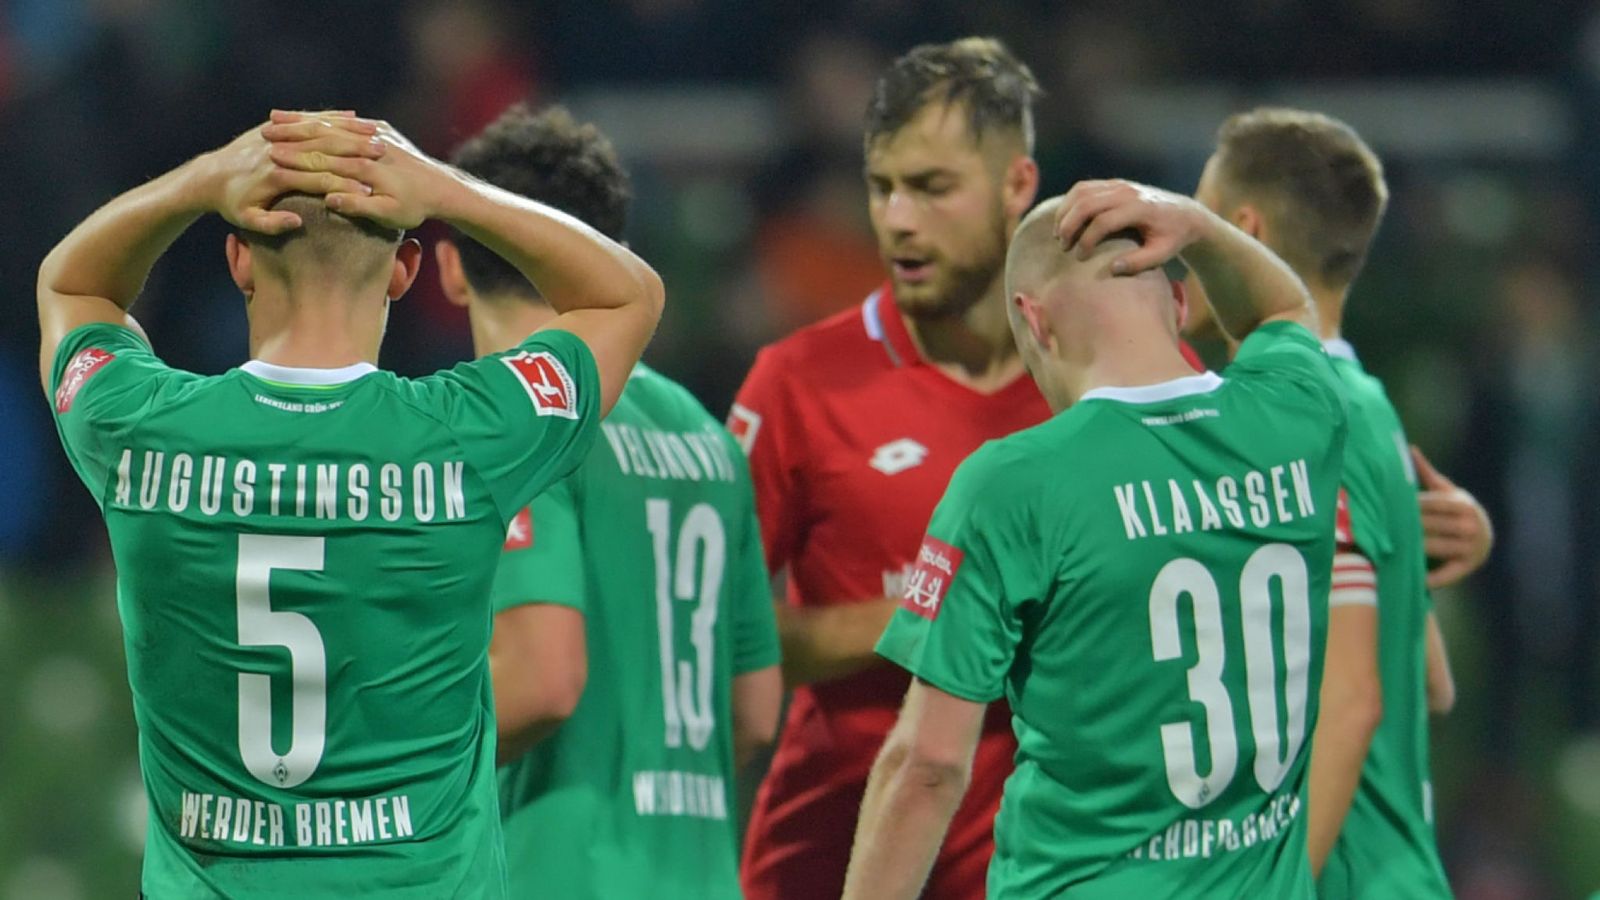 CLB bóng đá Werder Bremen: Vì đâu nên nỗi?